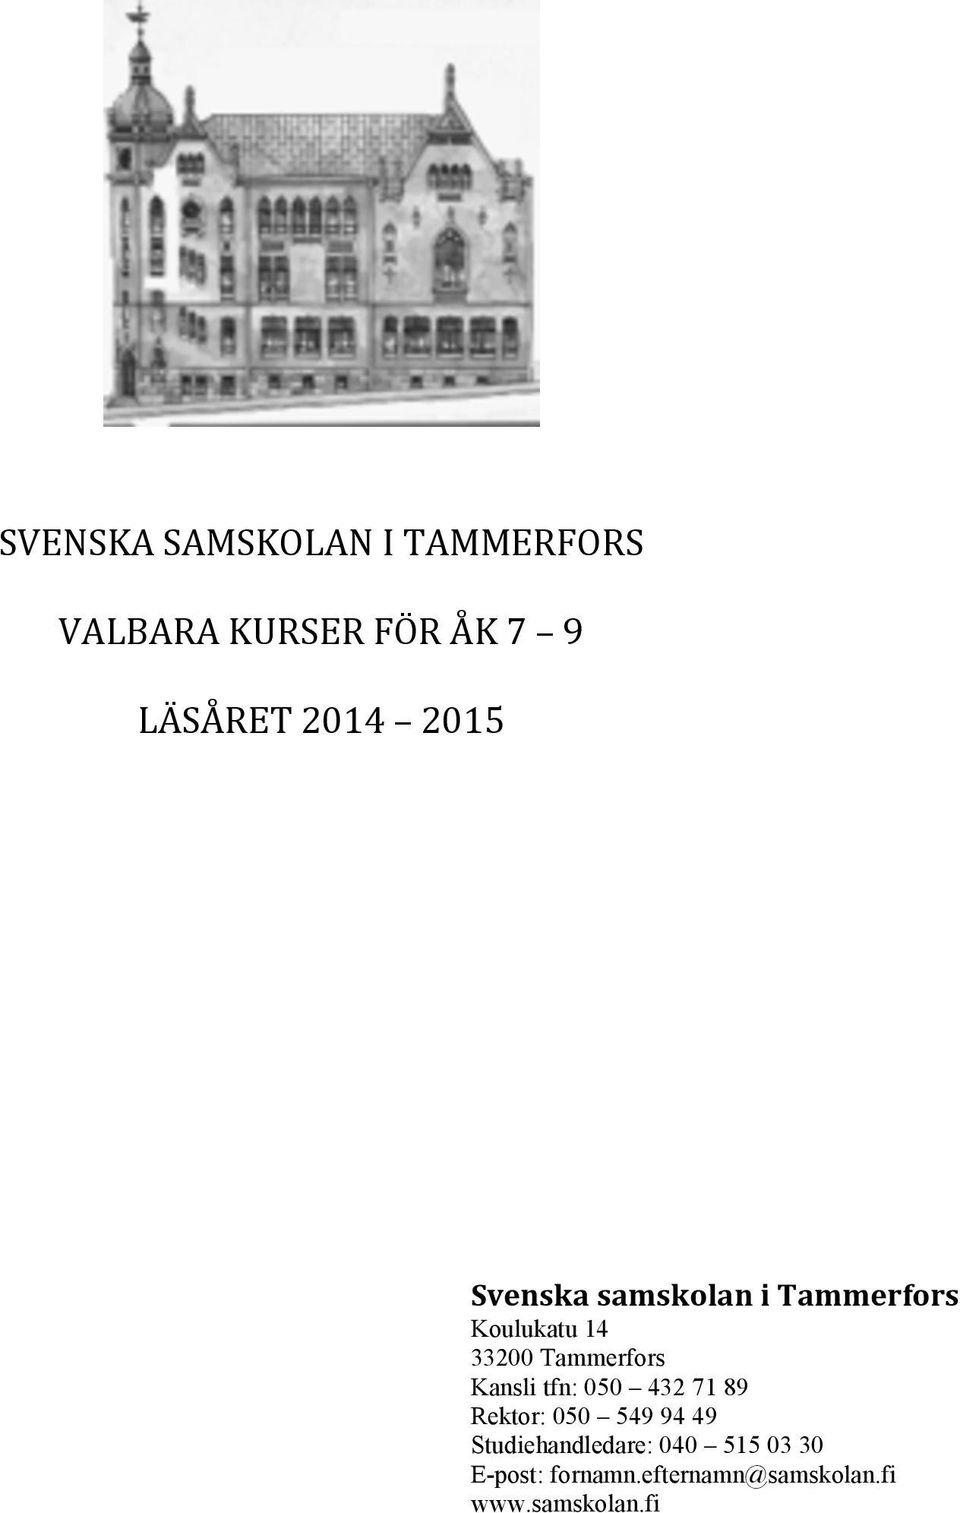 Tammerfors Kansli tfn: 050 432 71 89 Rektor: 050 549 94 49